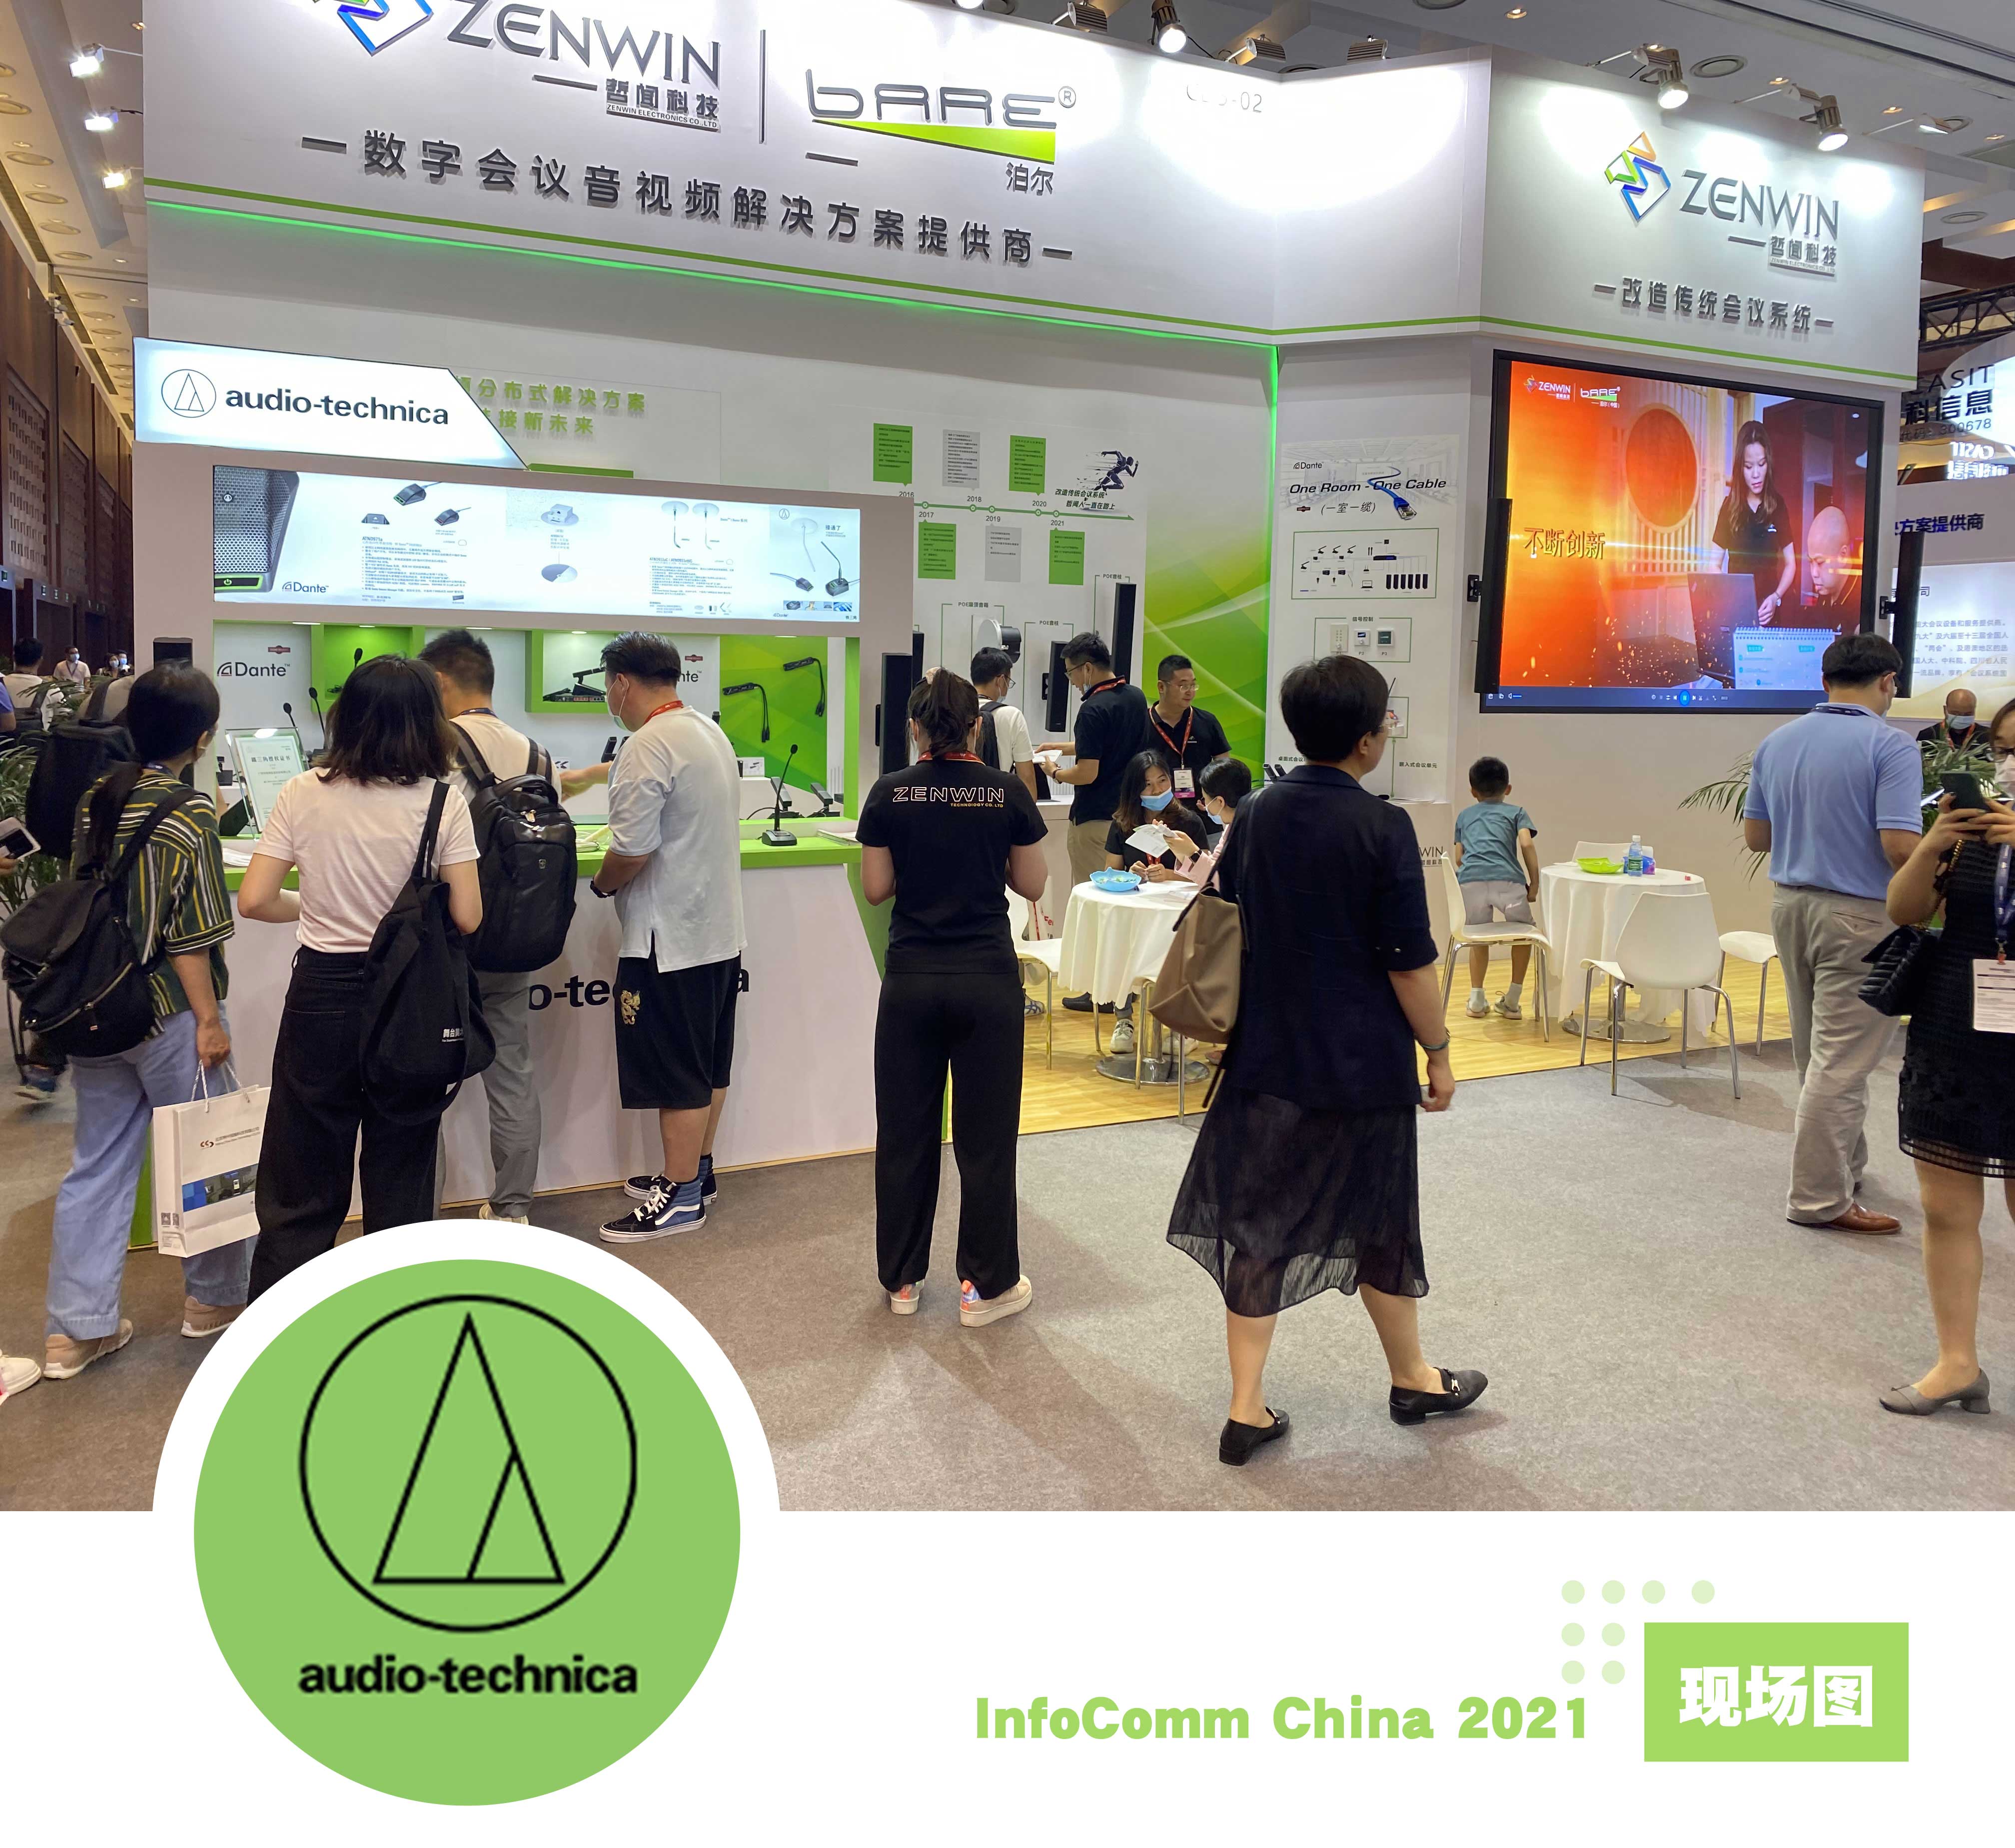 直击现场| 哲闻科技携手铁三角重磅亮相“InfoComm China 2021展”，精彩盛况先睹为快！(图3)